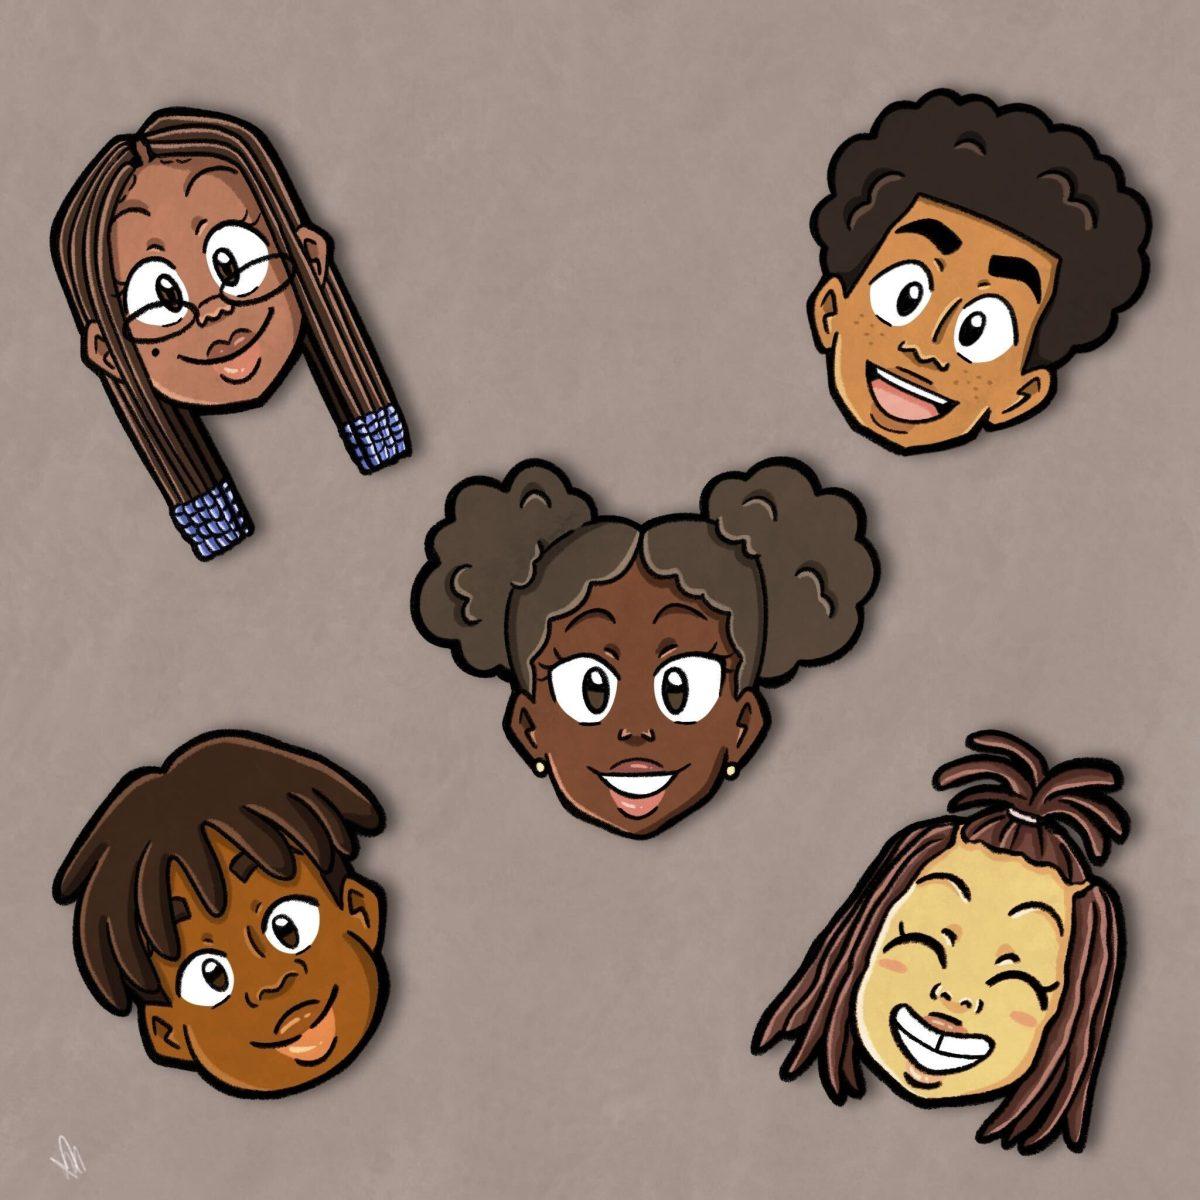 Hairstyles illustration